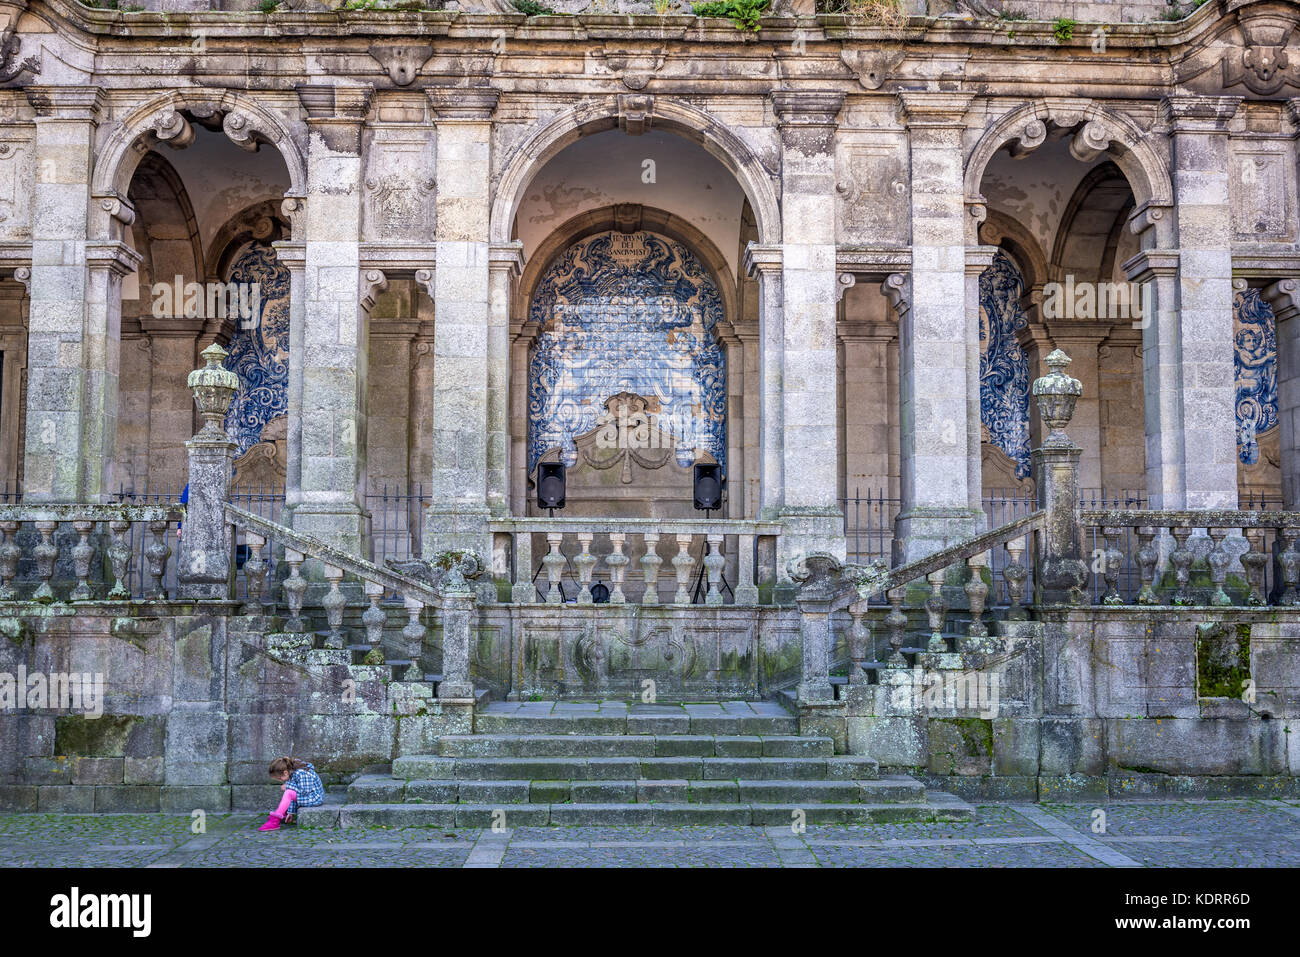 Piastrelle Azulejo di loggia barocca alla facciata laterale della cattedrale se cattolica romana nella città di Porto sulla penisola iberica in Portogallo Foto Stock